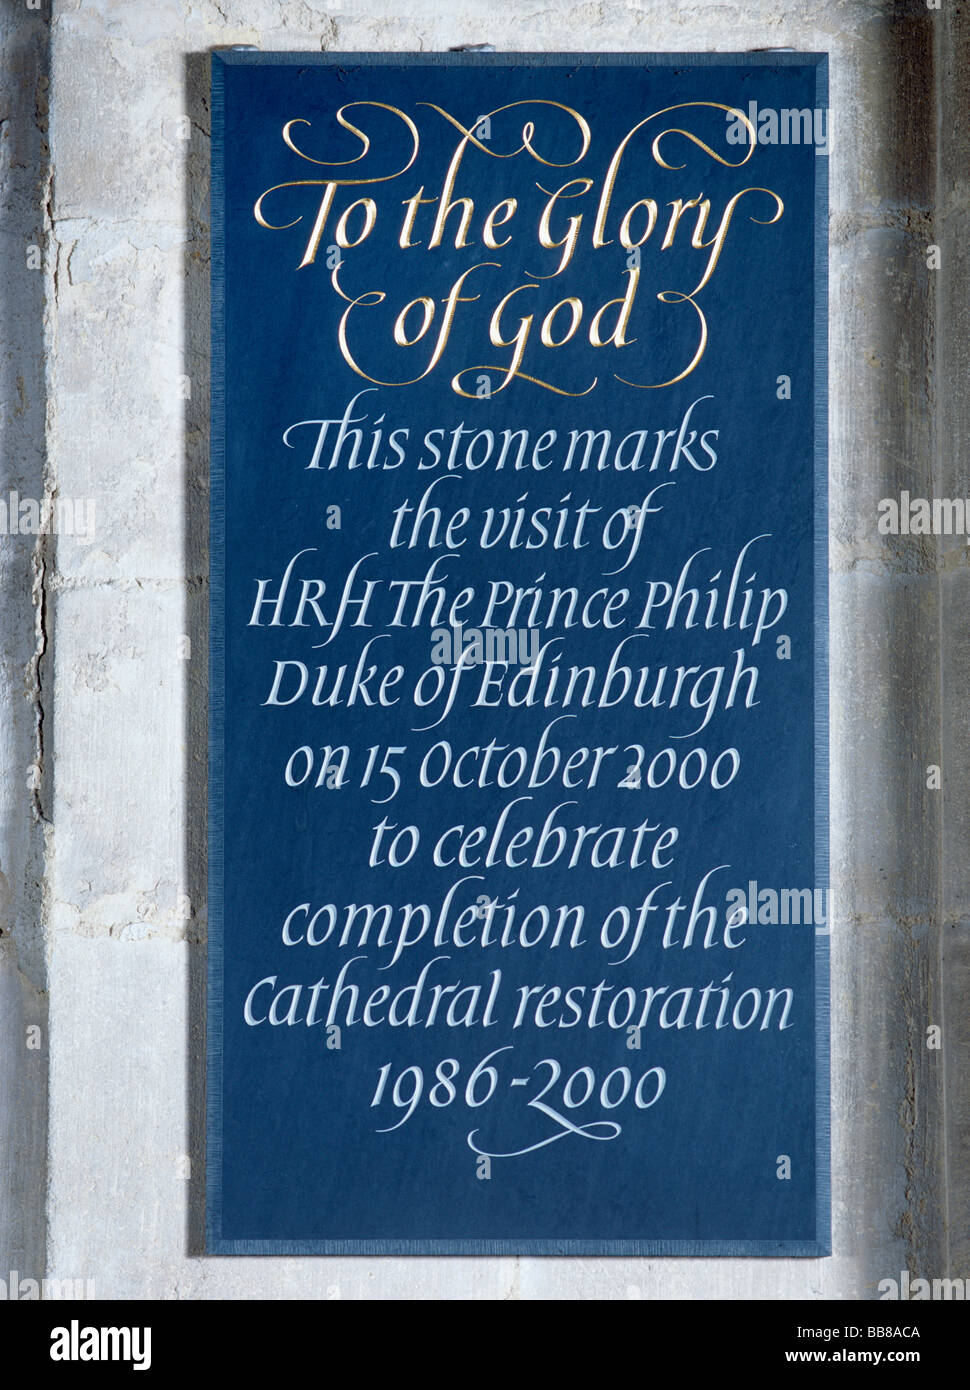 Cathédrale d'Ely plaque commémorant la restauration de 2000 Banque D'Images